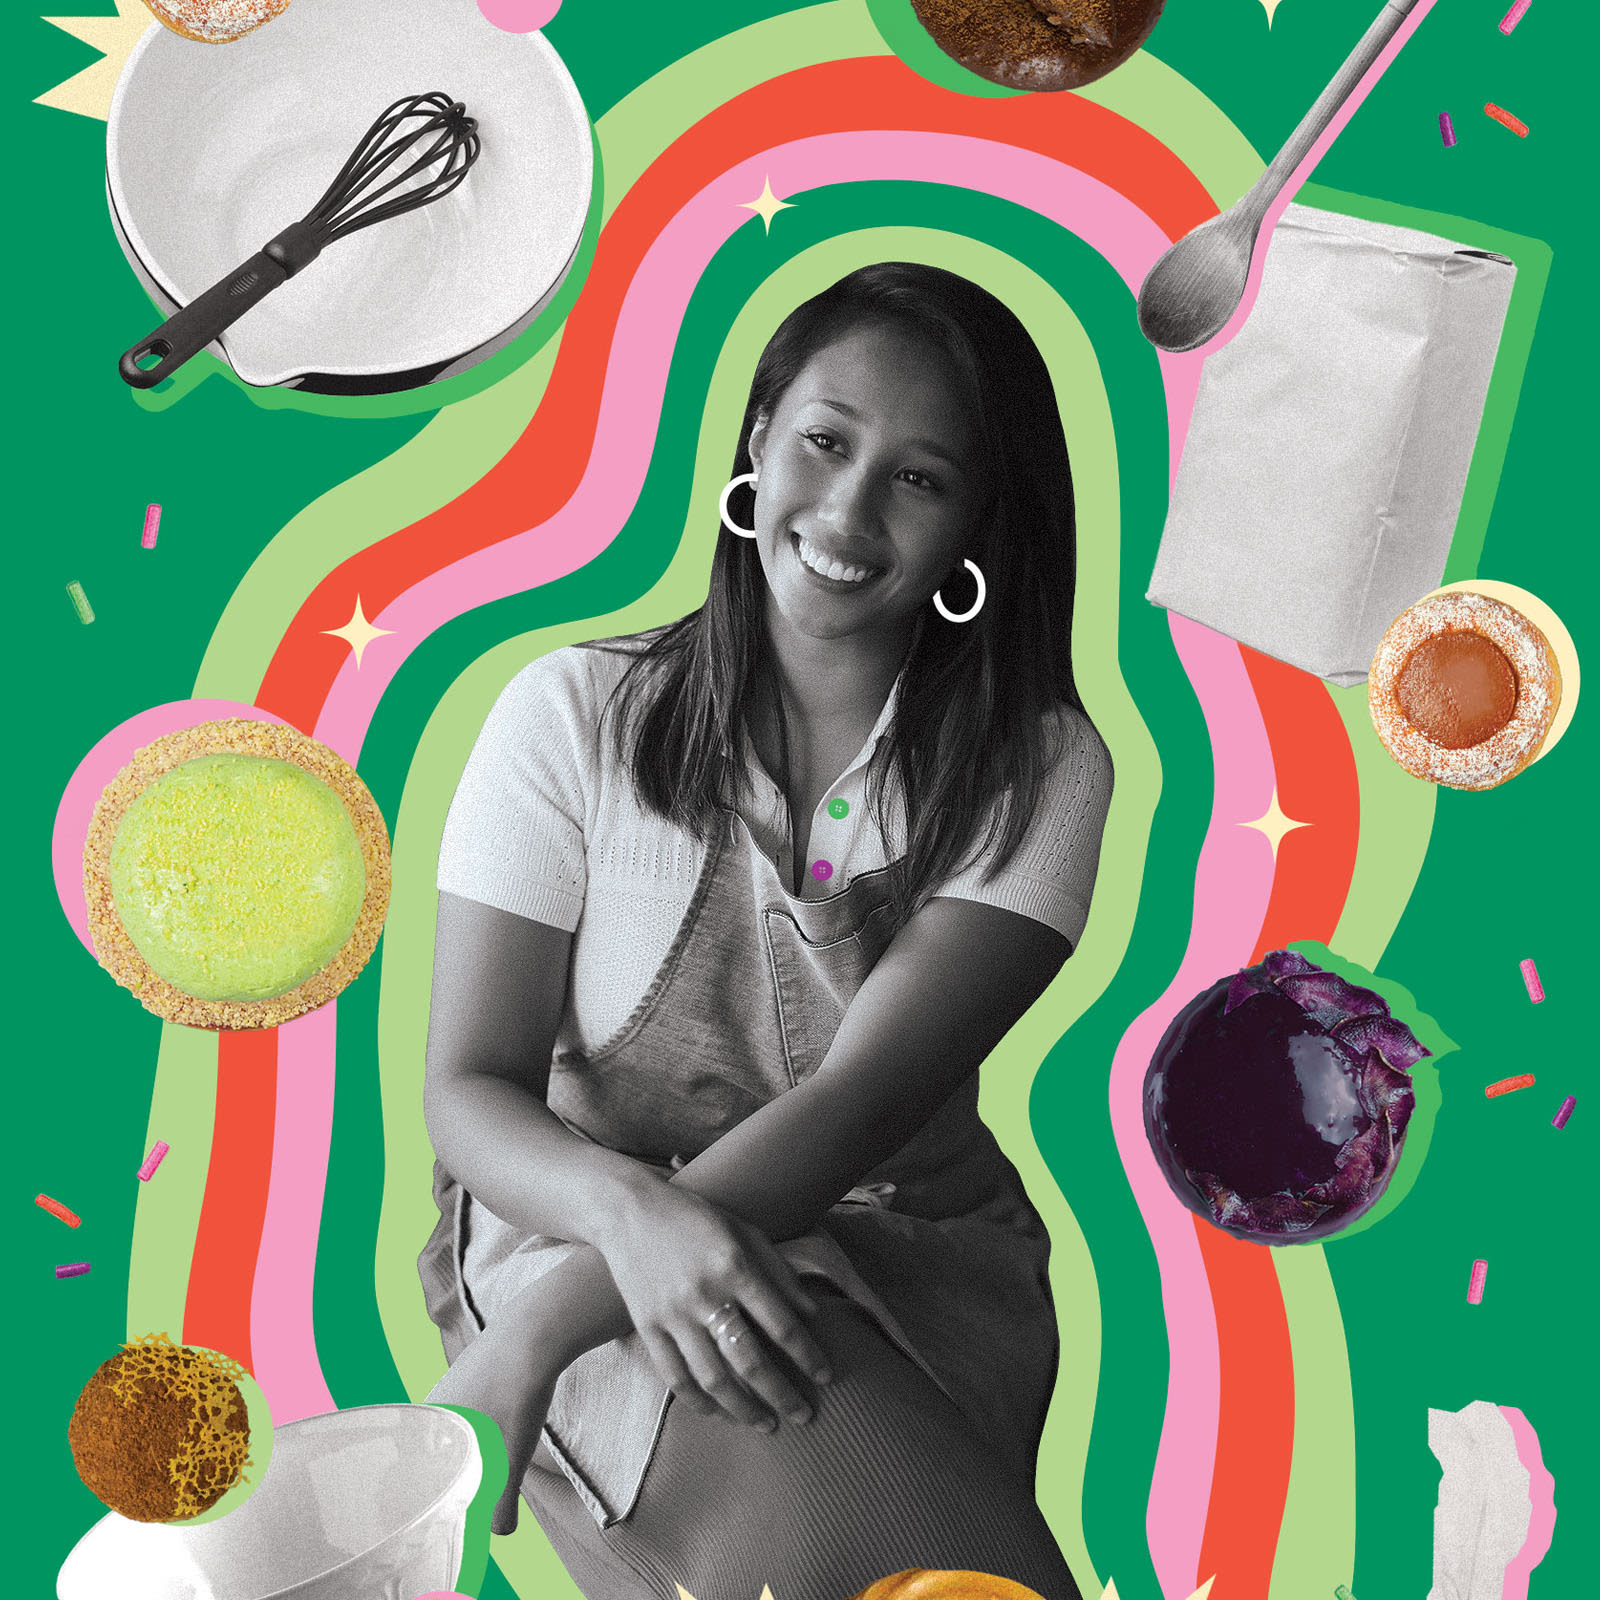 Kora: New York's Filipino bakery